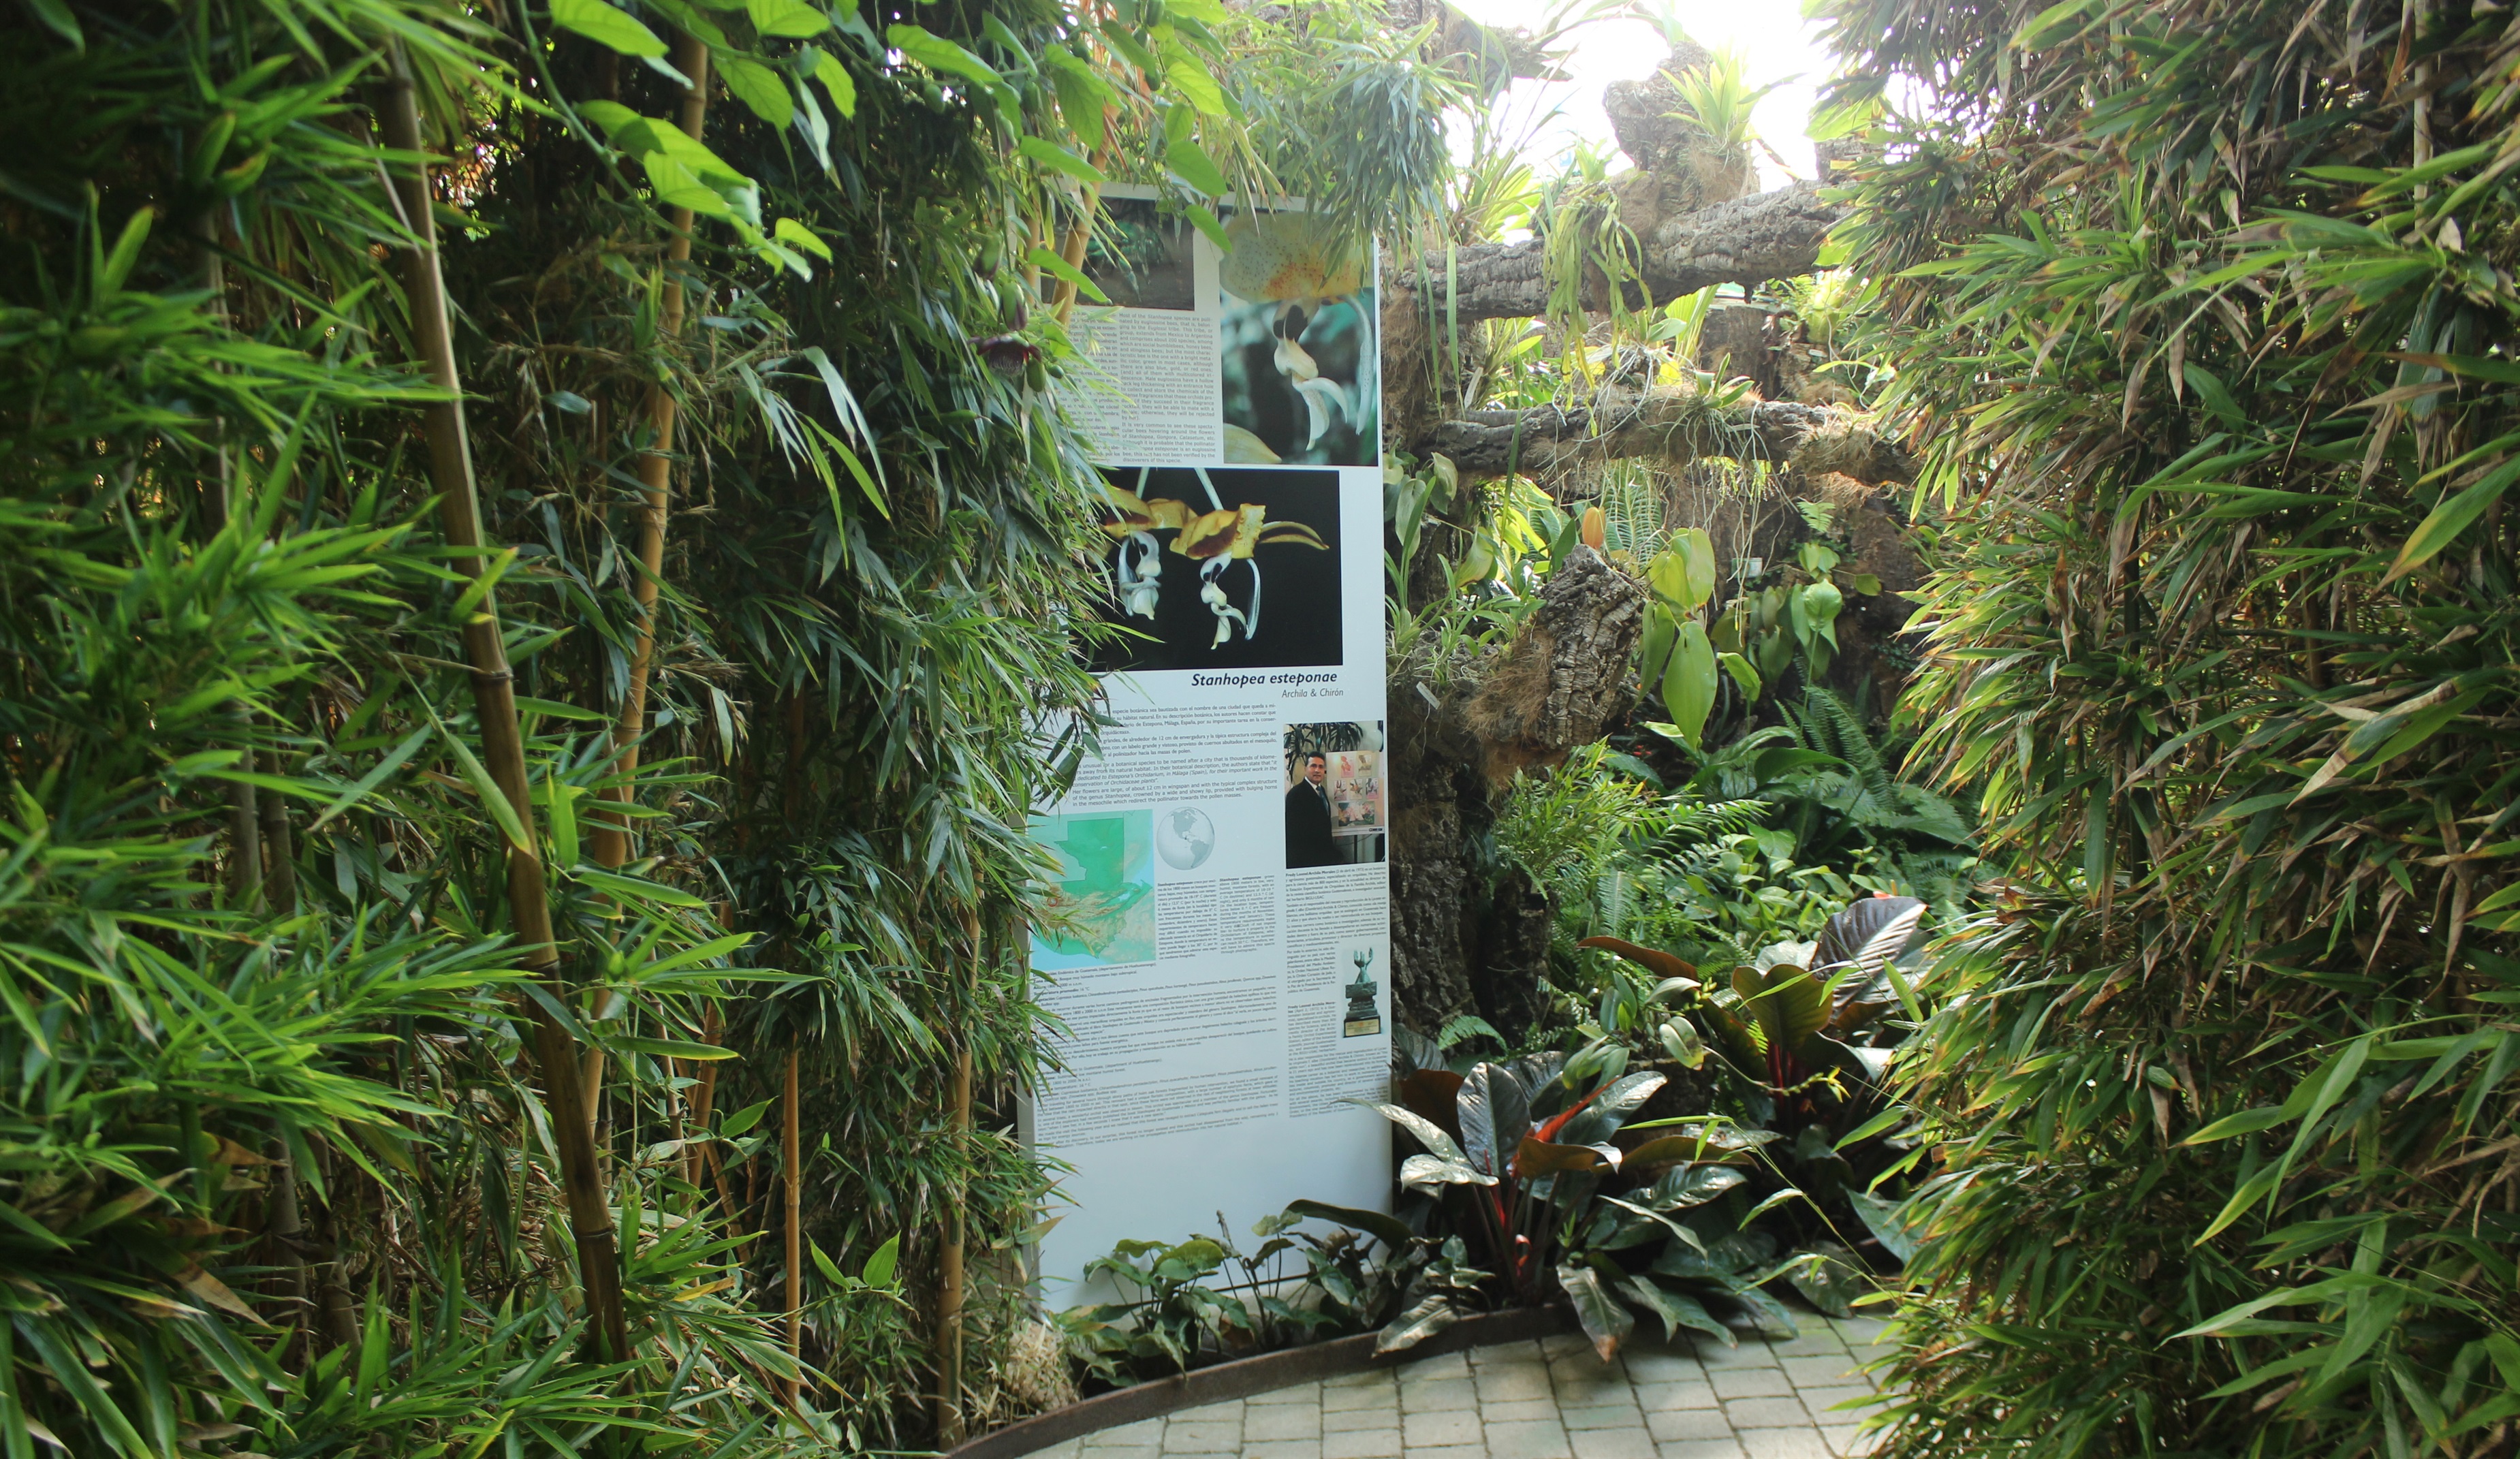 Parque Orquidario de Estepona dedica un espacio a una orquídea descubierta en Guatemala y a la que han nombrado como Estepona.  (Foto Prensa Libre: dpa)